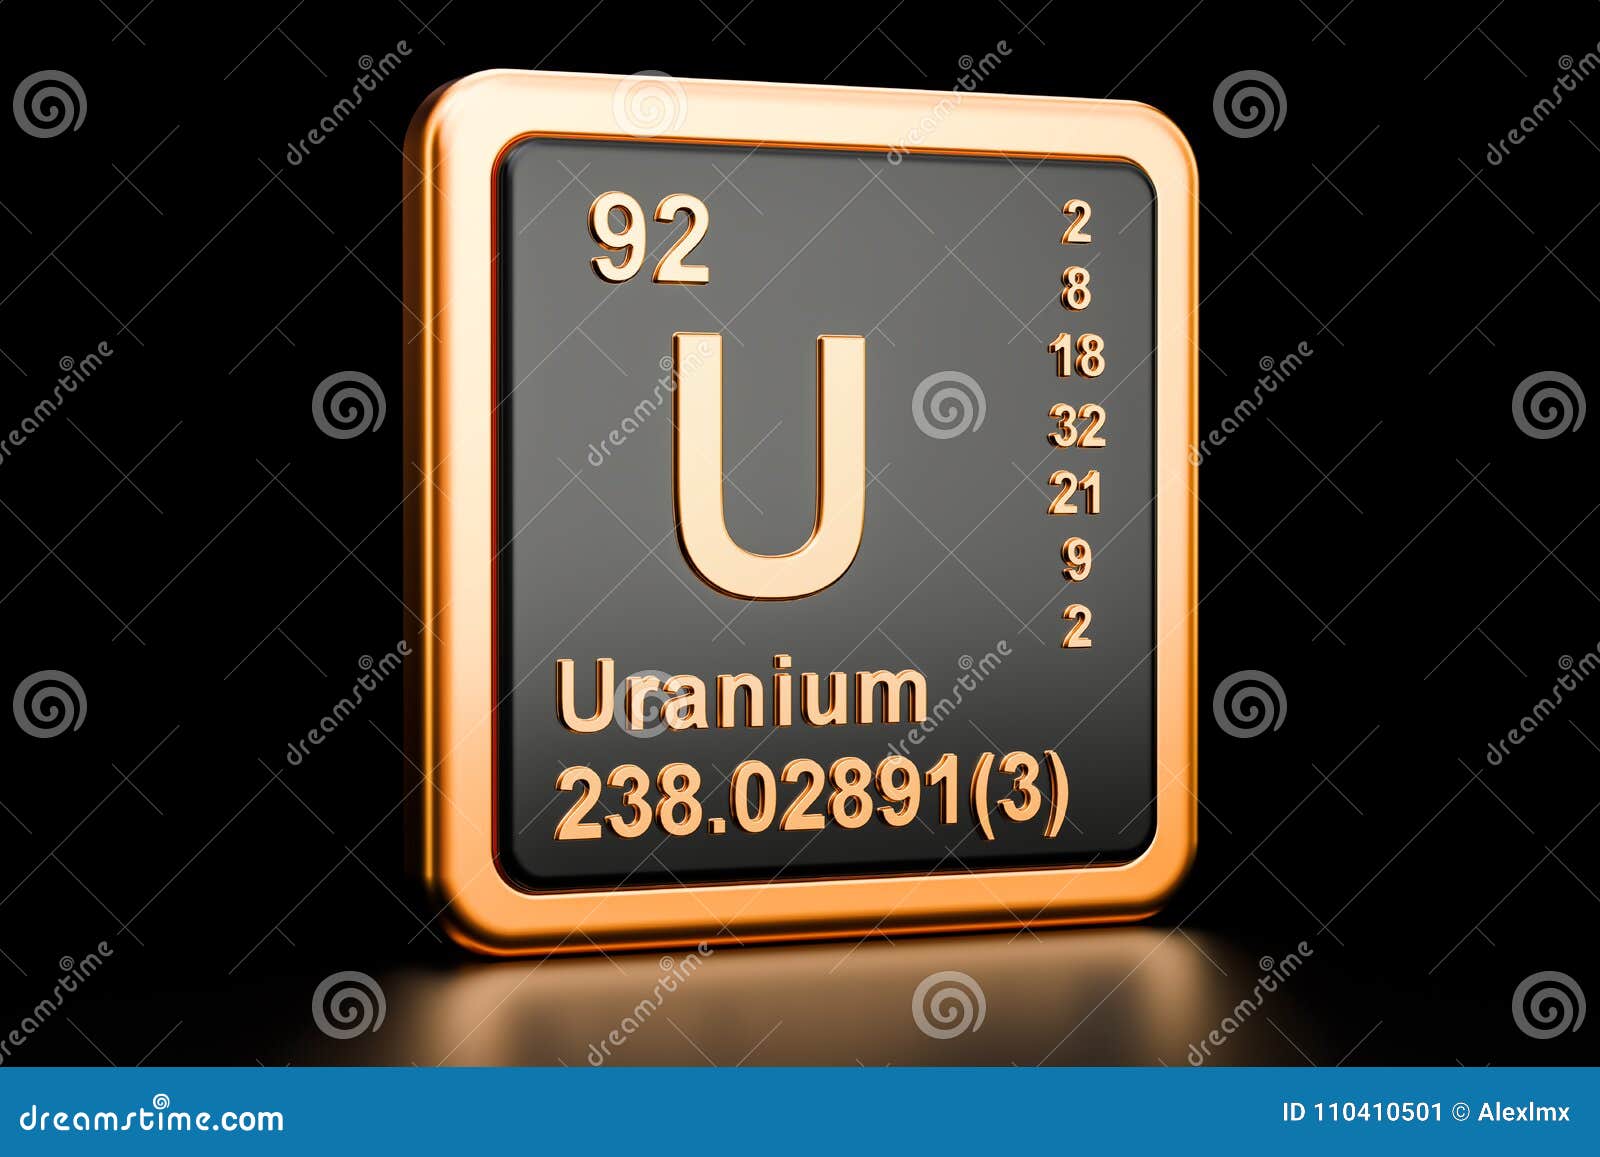 uranium u chemical . 3d rendering